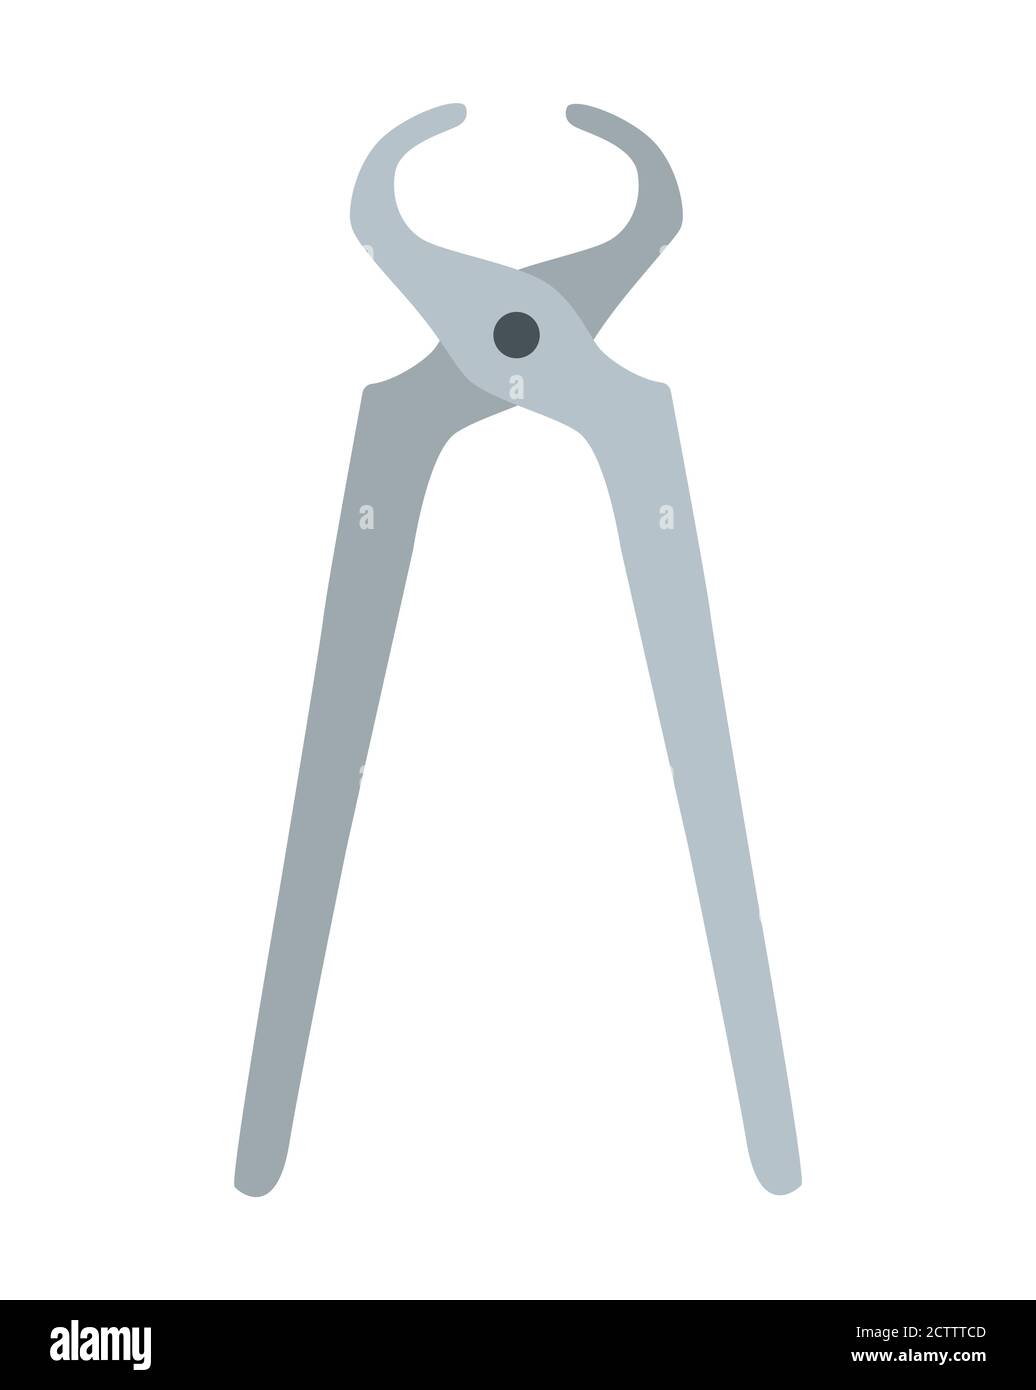 Zange für farbige Eisenschneidzangen. Werkzeugsymbol für geschlossene Stahlzangen. Grauer Griff. Flache Abbildung des Vektorsymbols für Zangen-Werkzeuge für Webdesign. Stock Vektor